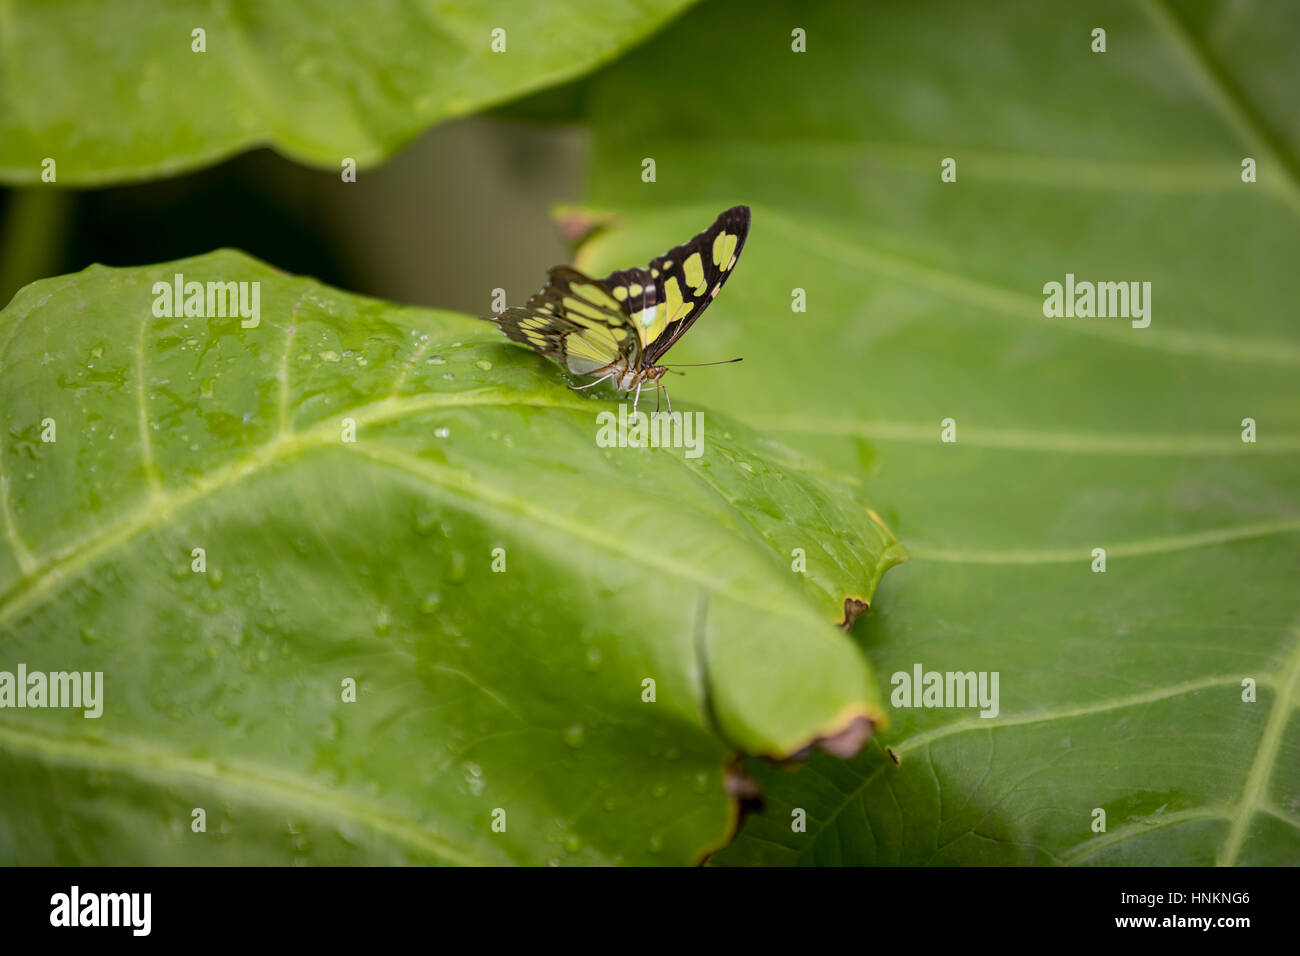 Malachite butterfly on foliage Stock Photo